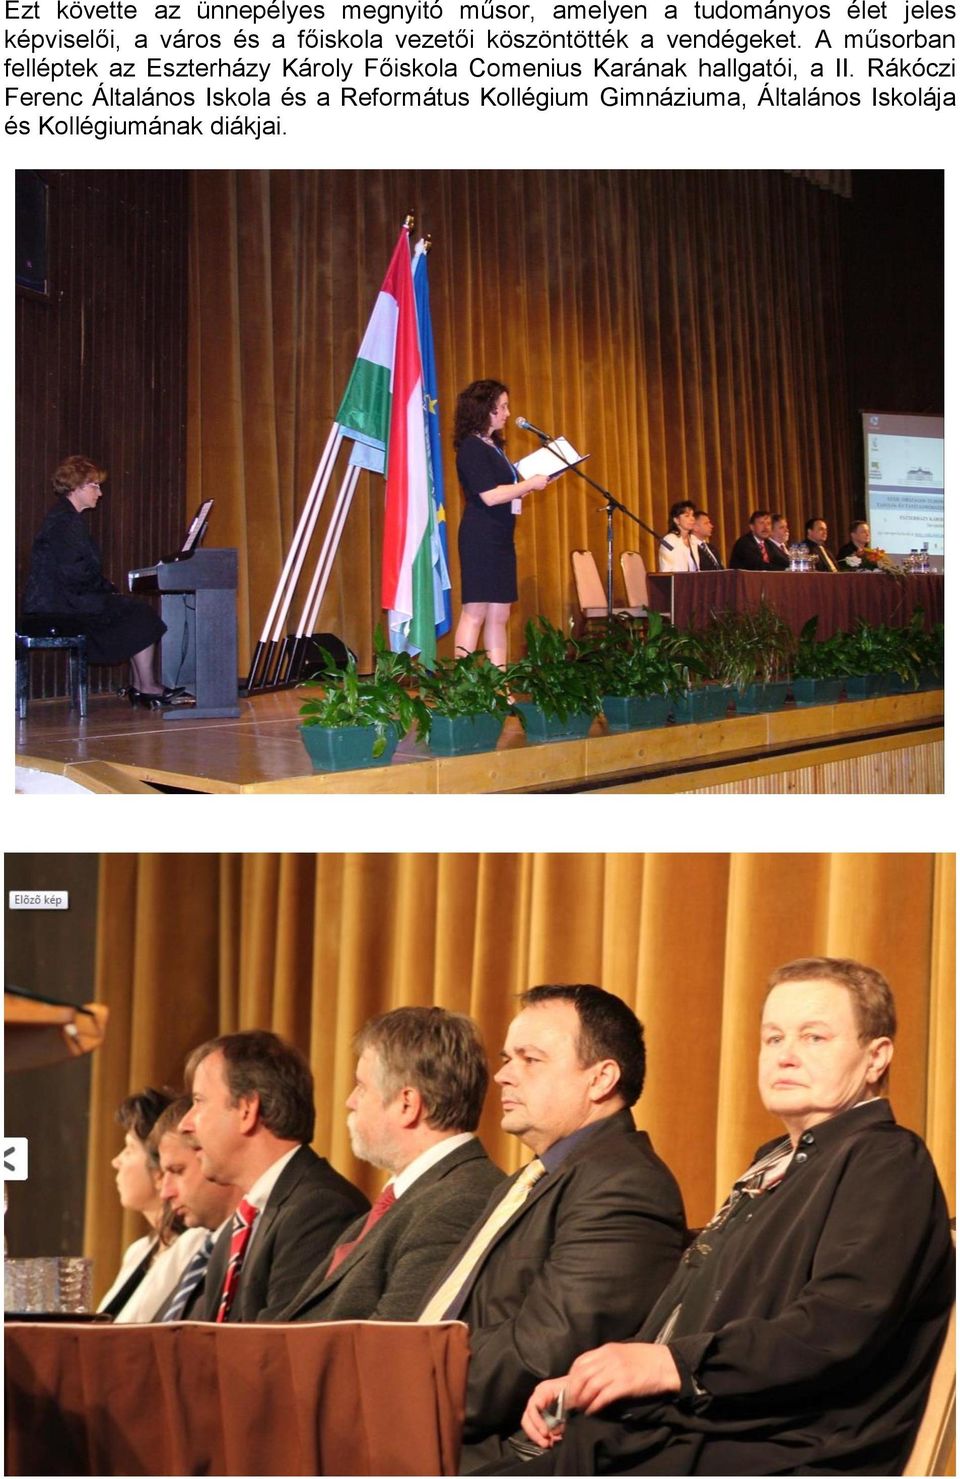 A műsorban felléptek az Eszterházy Károly Főiskola Comenius Karának hallgatói, a II.